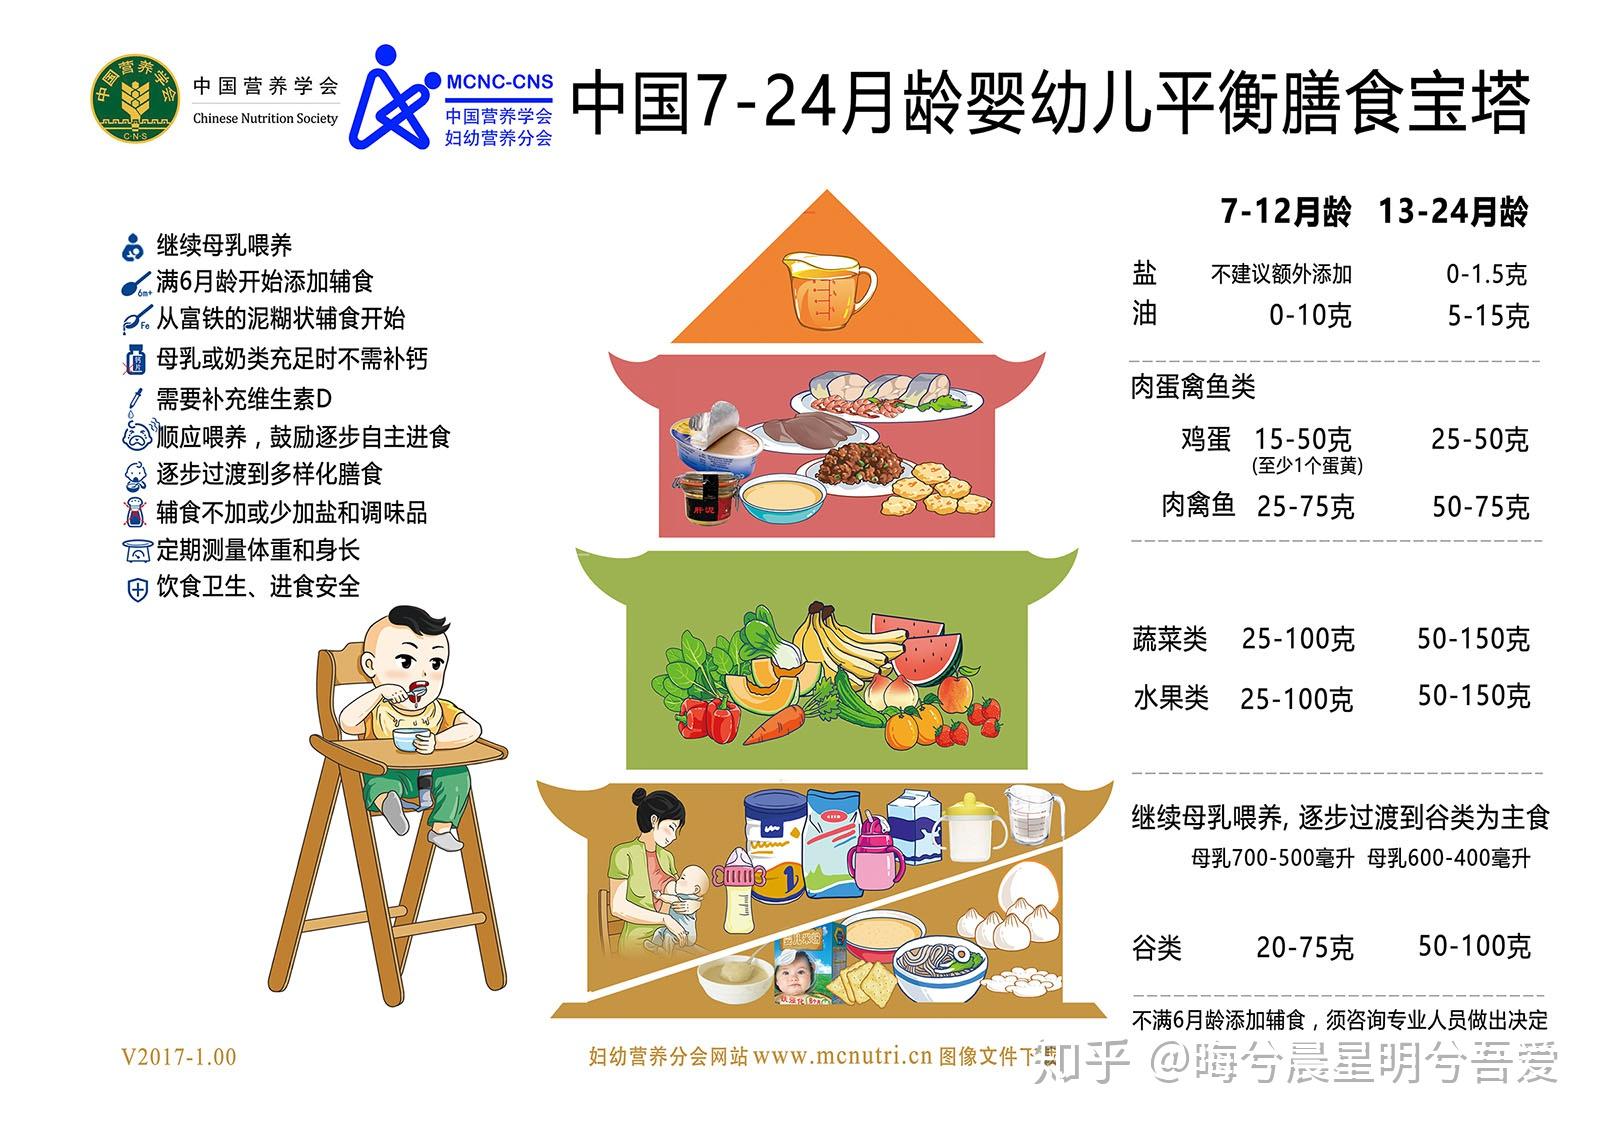 8、中国居民膳食宝塔是怎样的构成结构？主要包括哪些内容？_百度知道